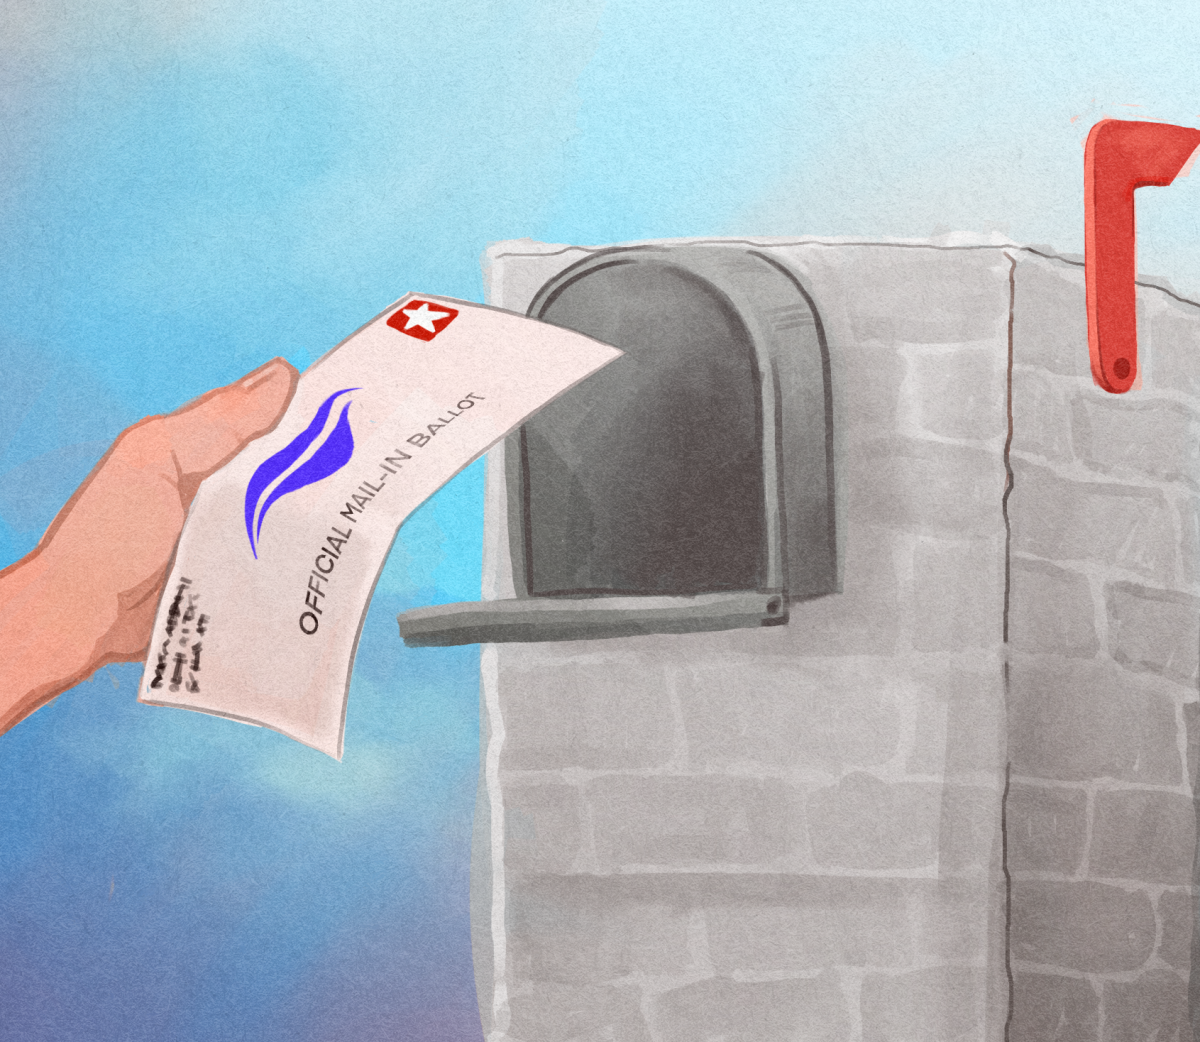 Legisladores de Texas aprueban proyectos de ley para reducir el rechazo de las boletas por correo